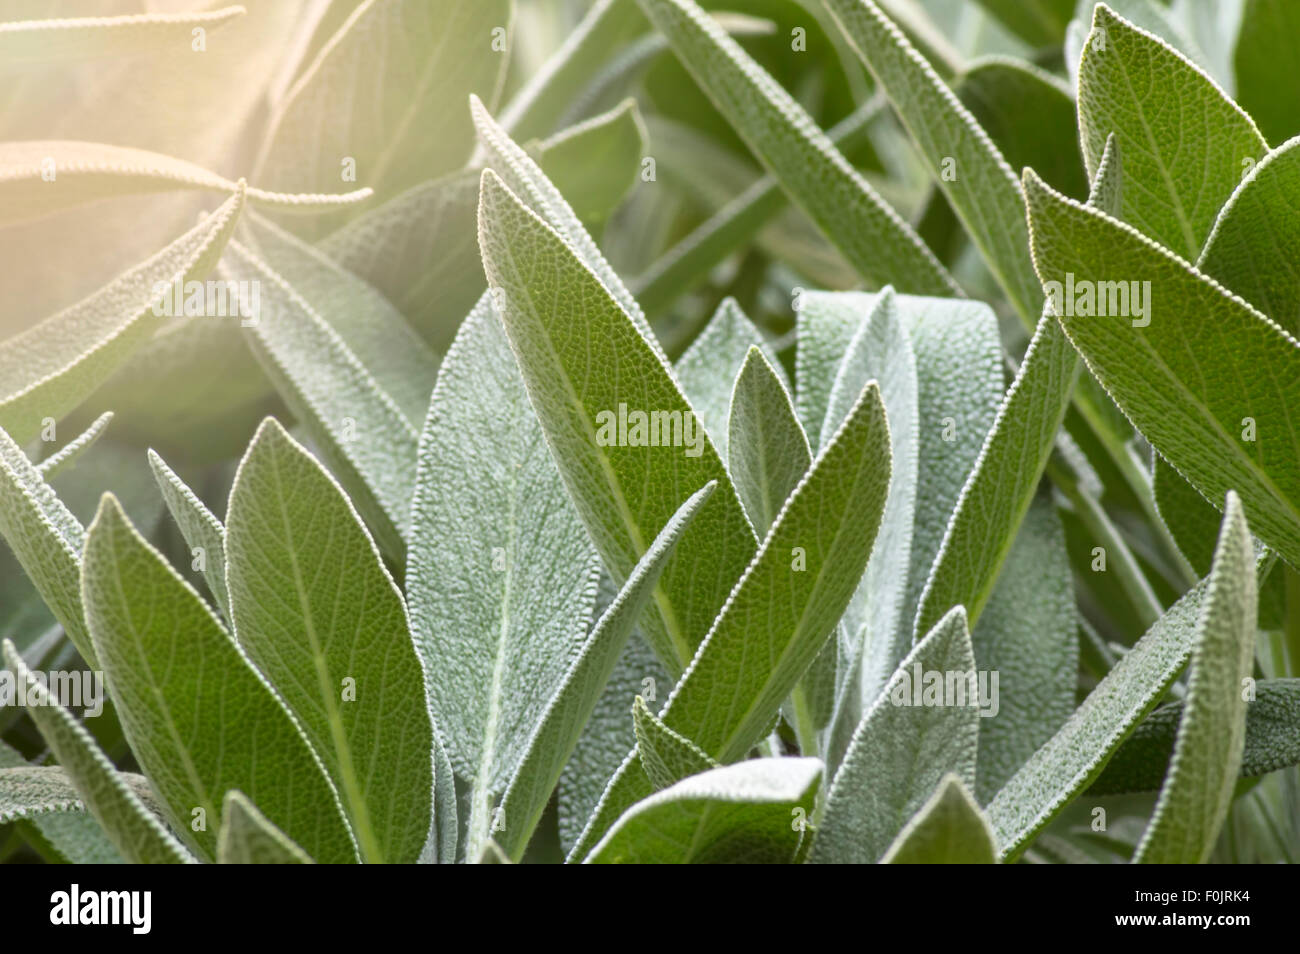 Plante vert sauge (Salvia officinalis), dans le jardin potager. Selective focus Banque D'Images